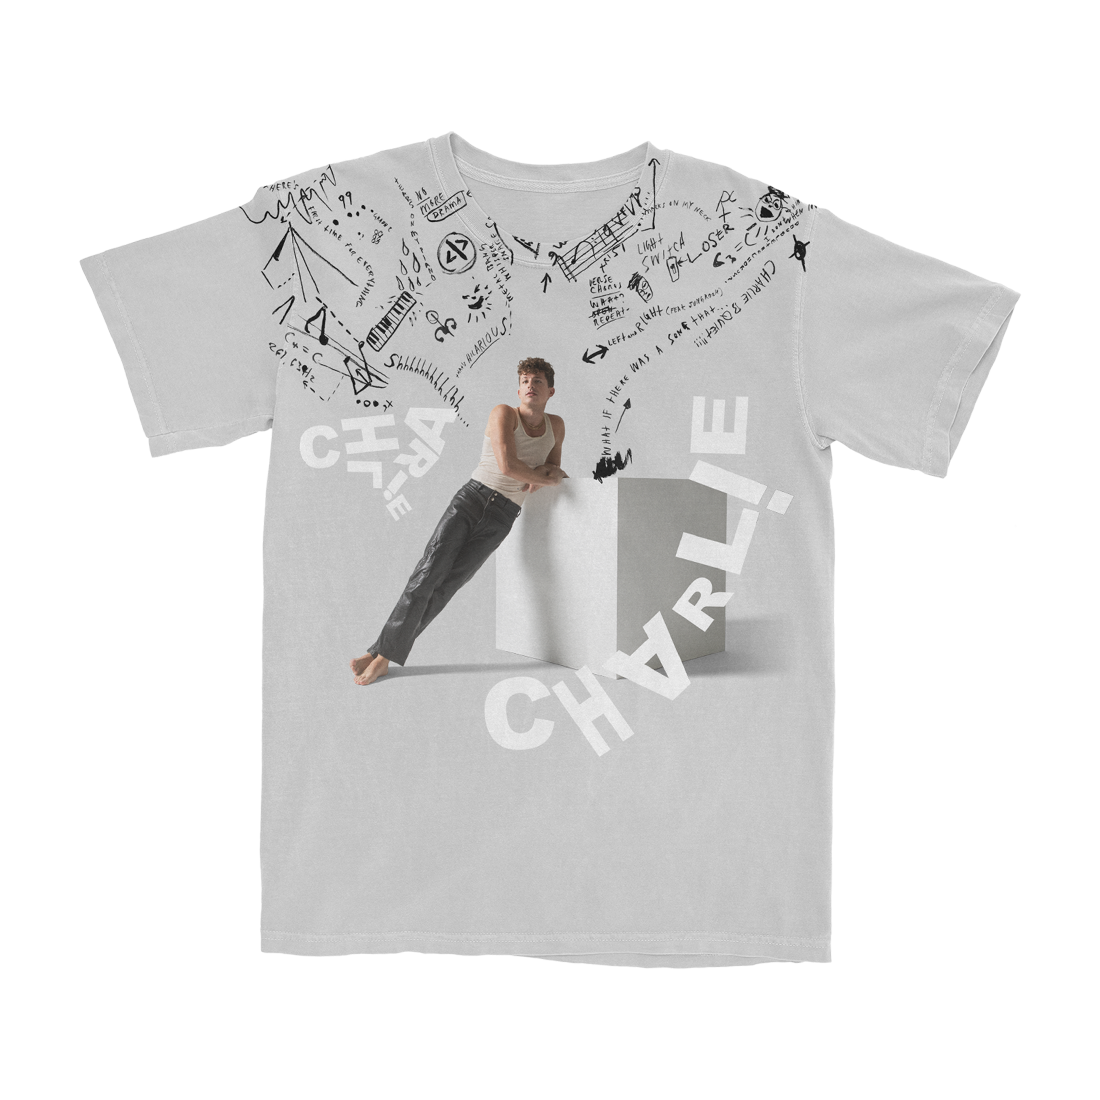 CHARLIE PUTH チャーリープース 2018 ツアー Tシャツ Lサイズ